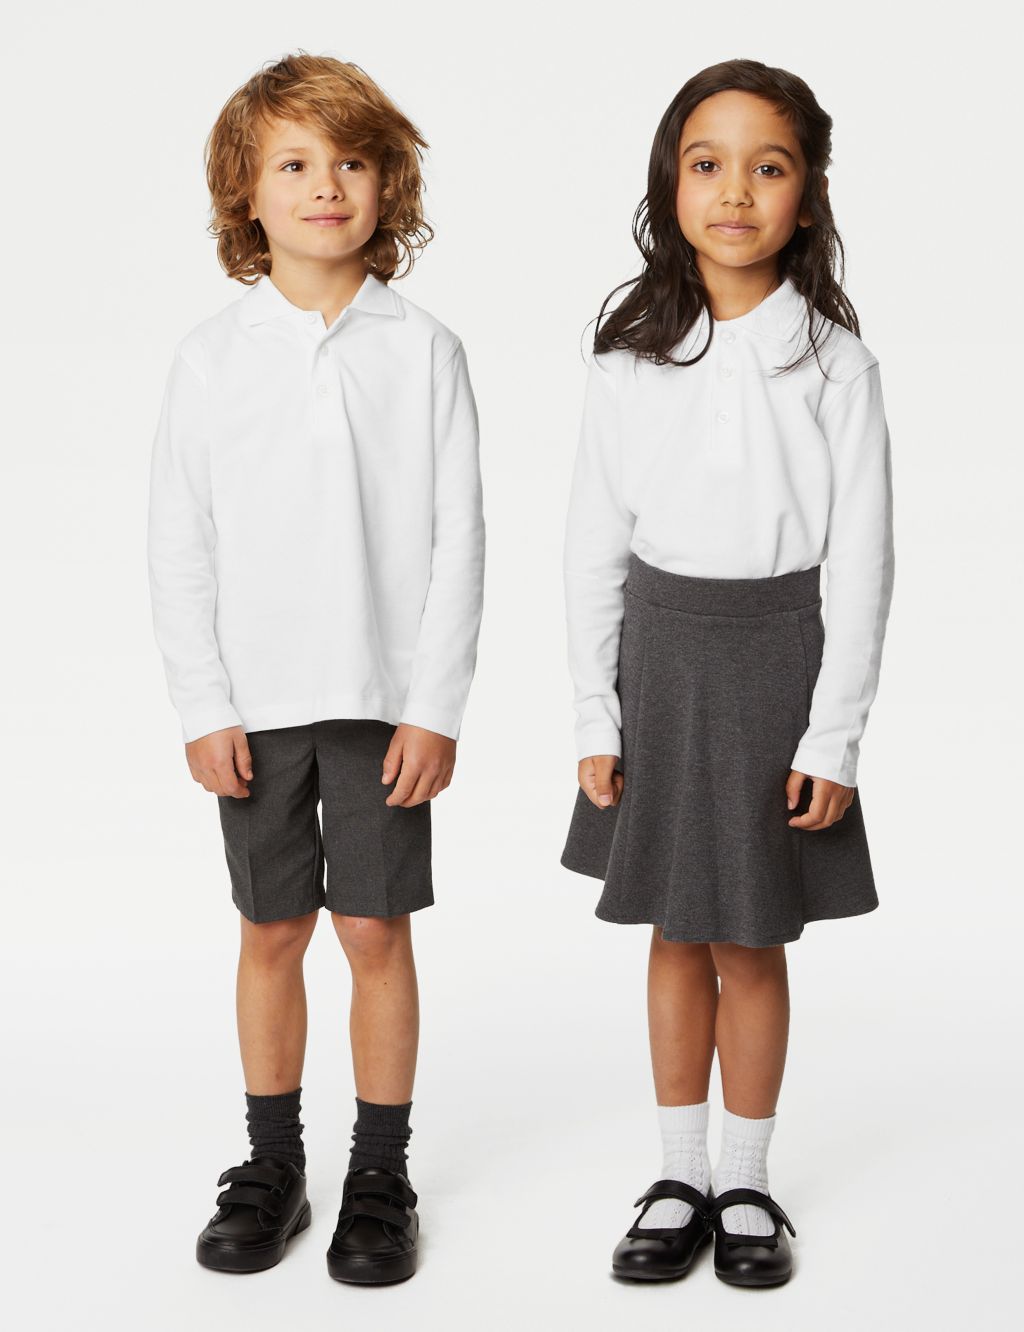 2pk Unisex Easy Dressing School Polo Shirts (3-18 Yrs) image 1